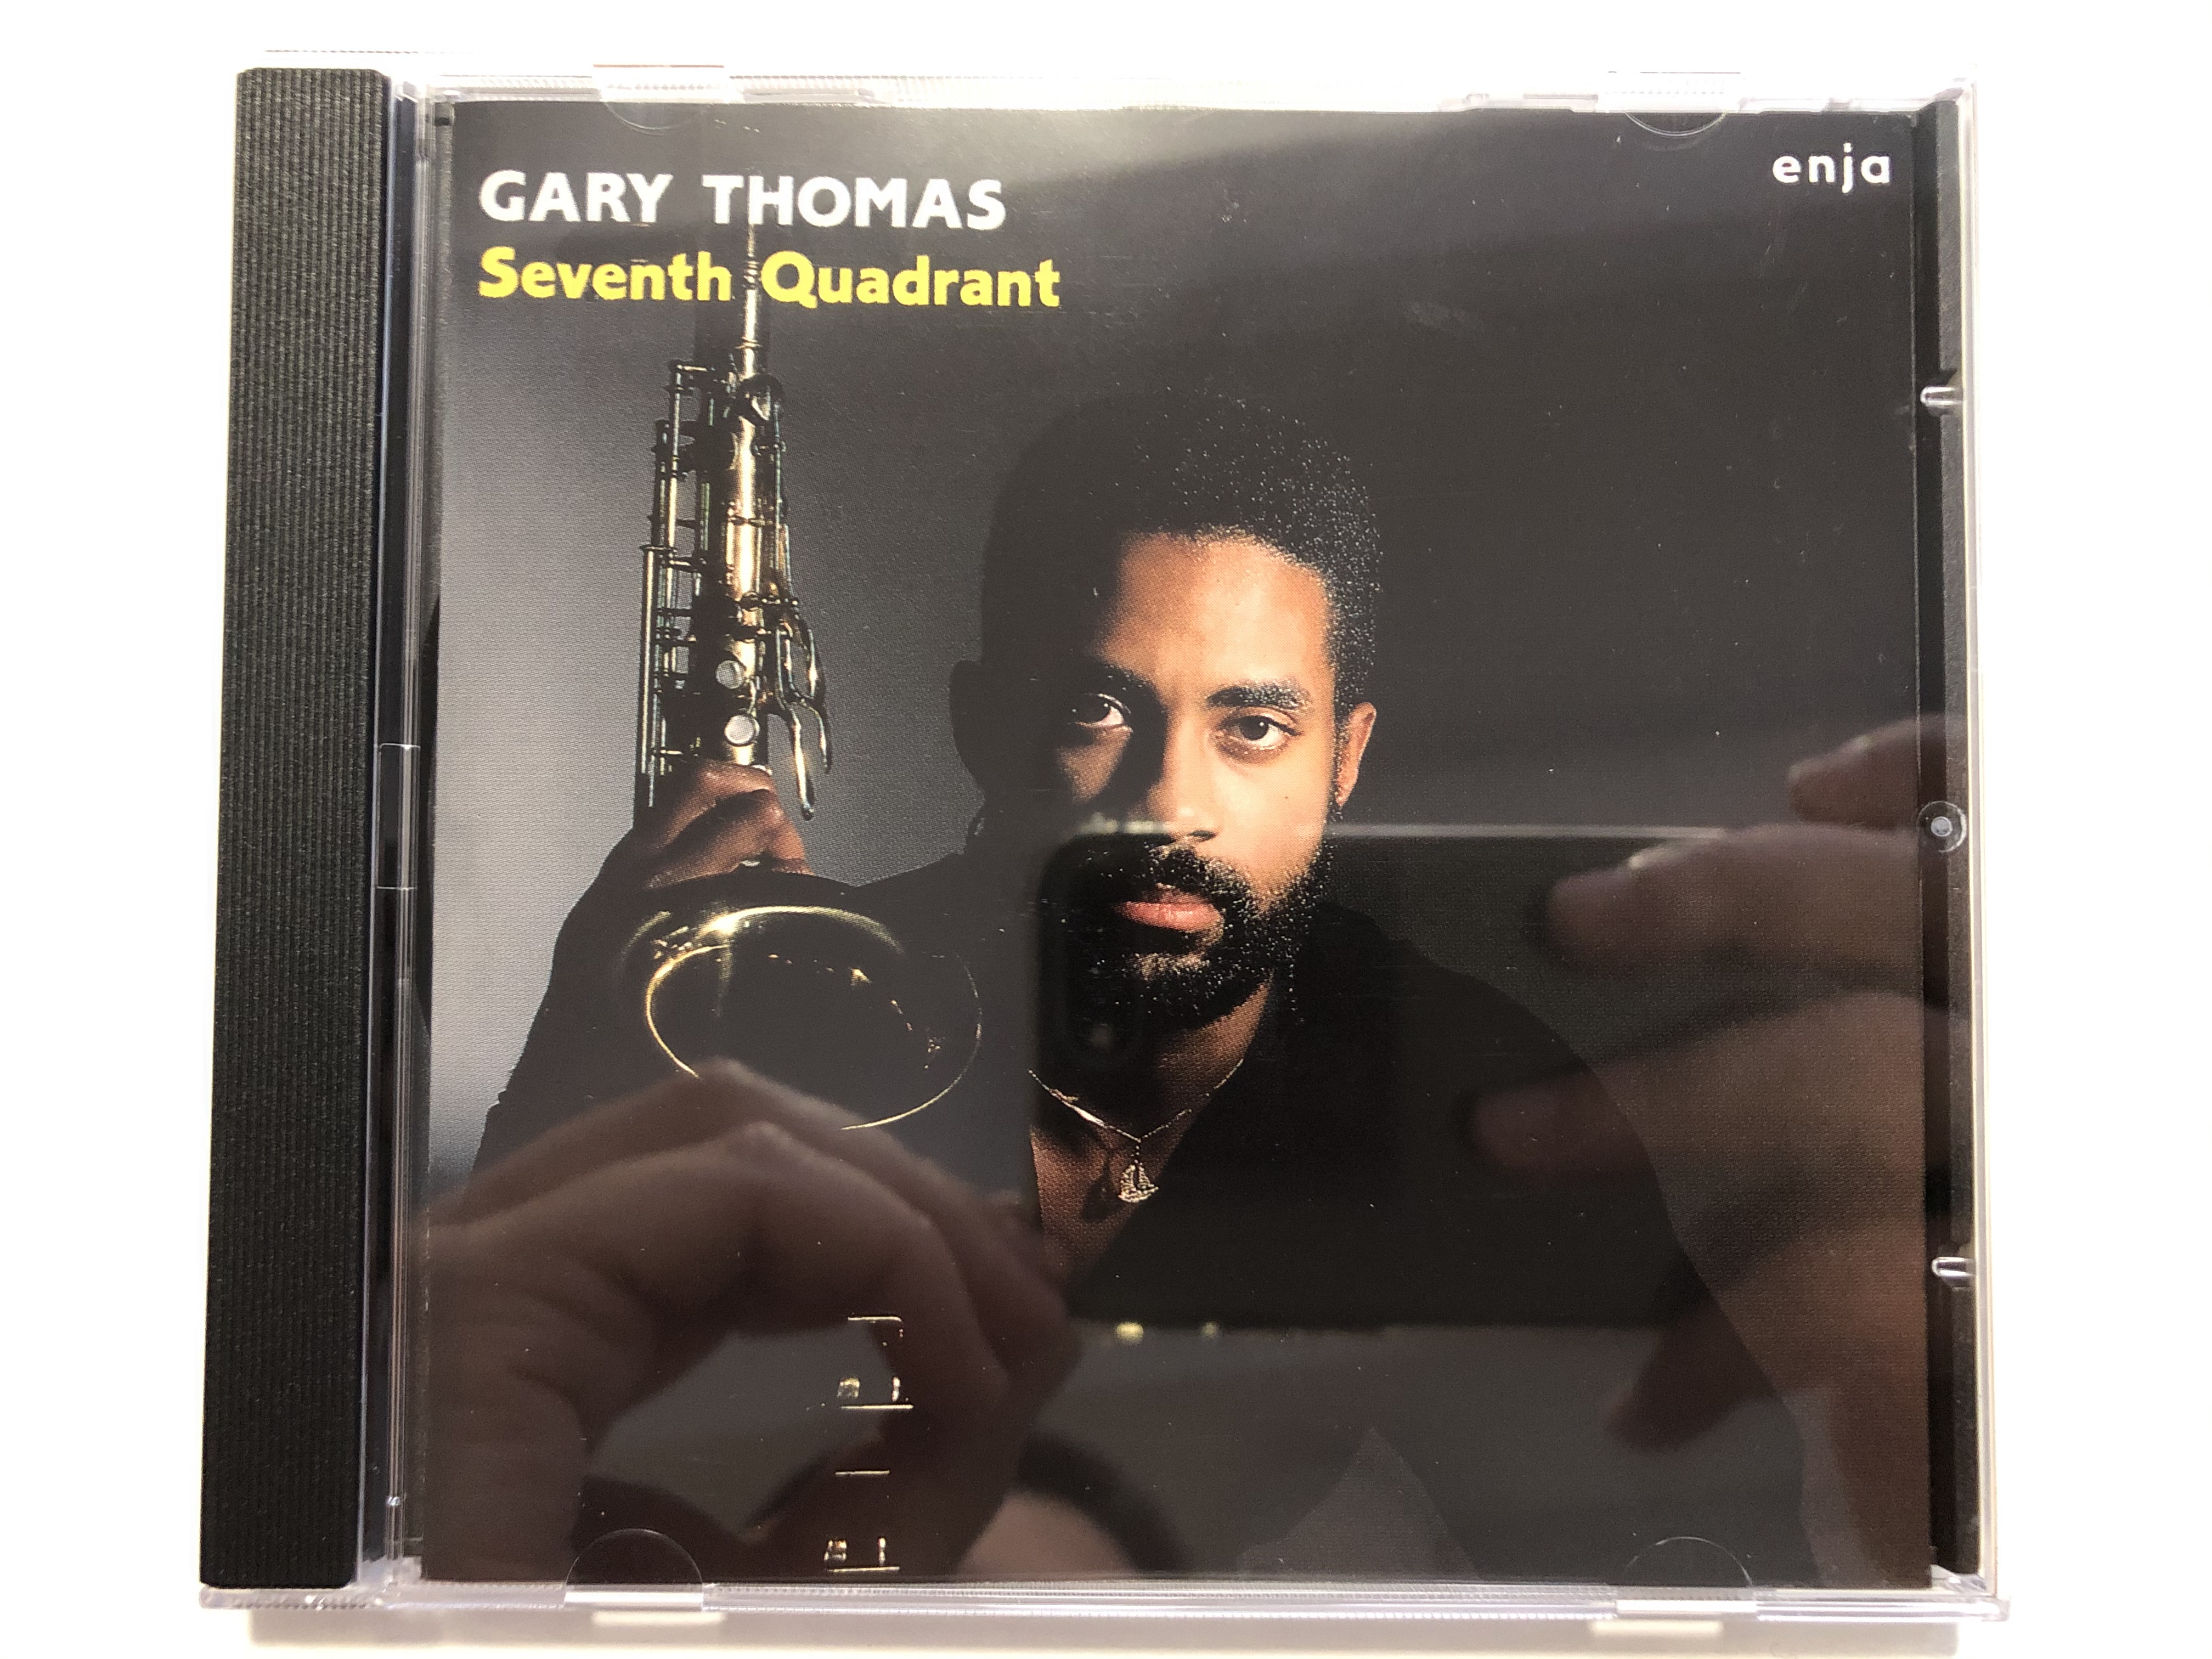 gary-thomas-seventh-quadrant-enja-records-audio-cd-1987-enj-5047-2-1-.jpg